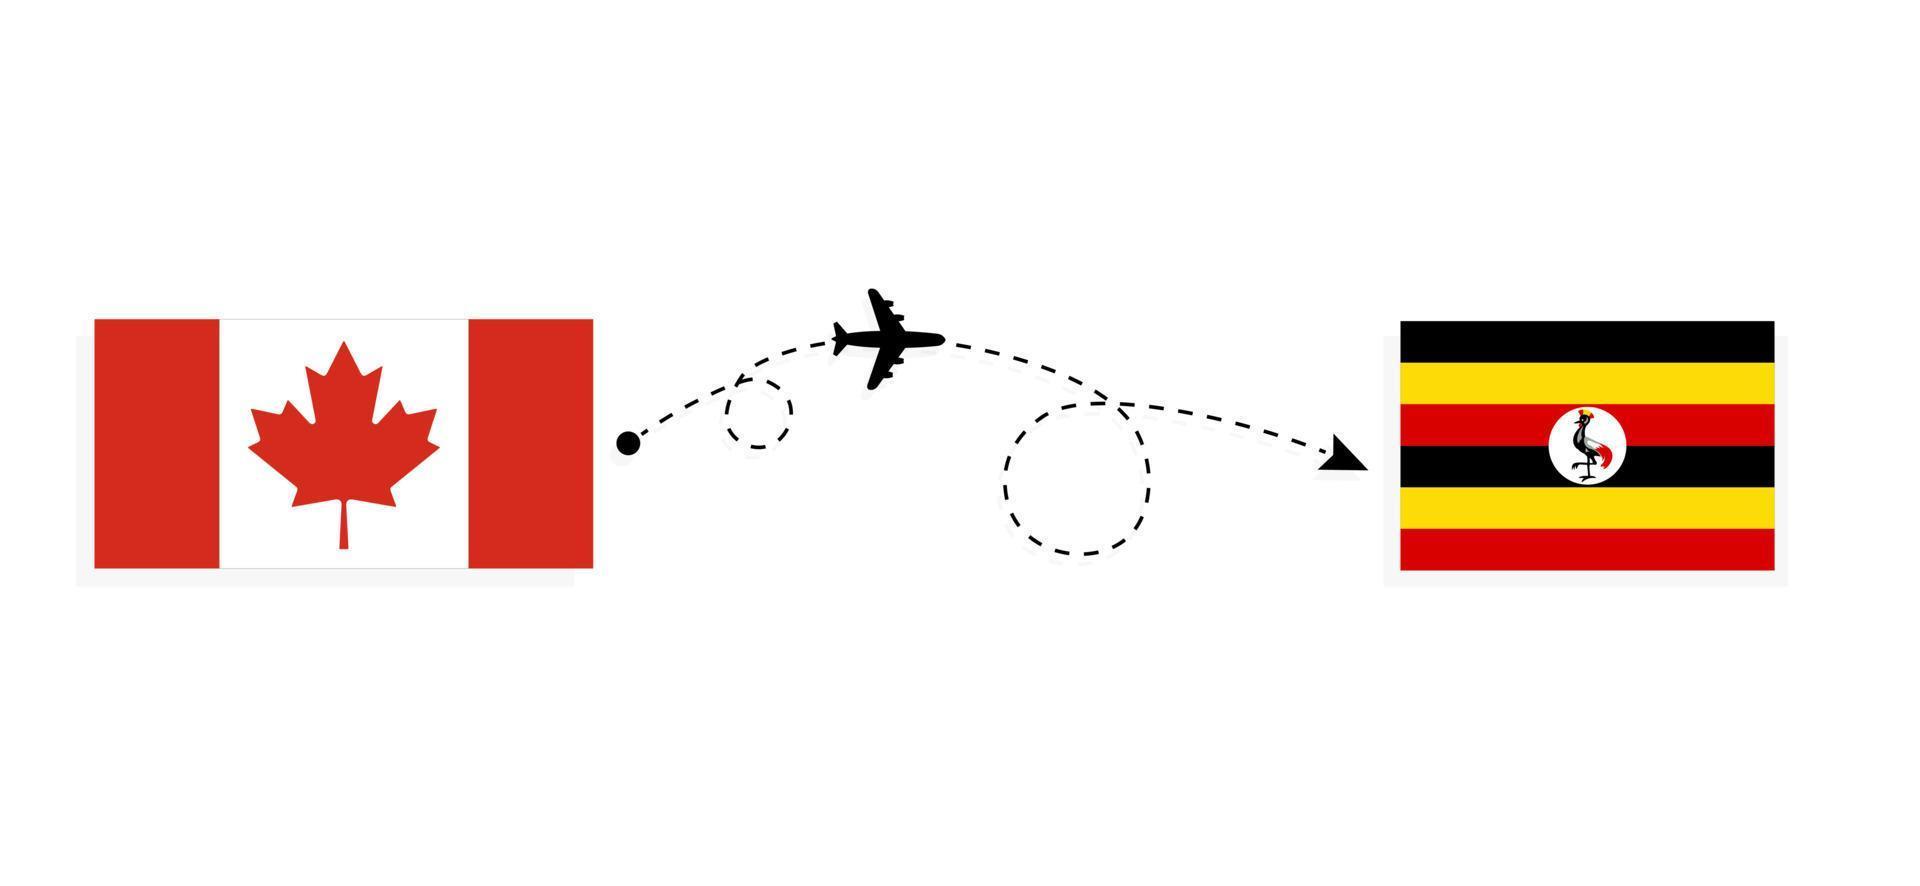 vol et voyage du canada à l'ouganda par concept de voyage en avion de passagers vecteur